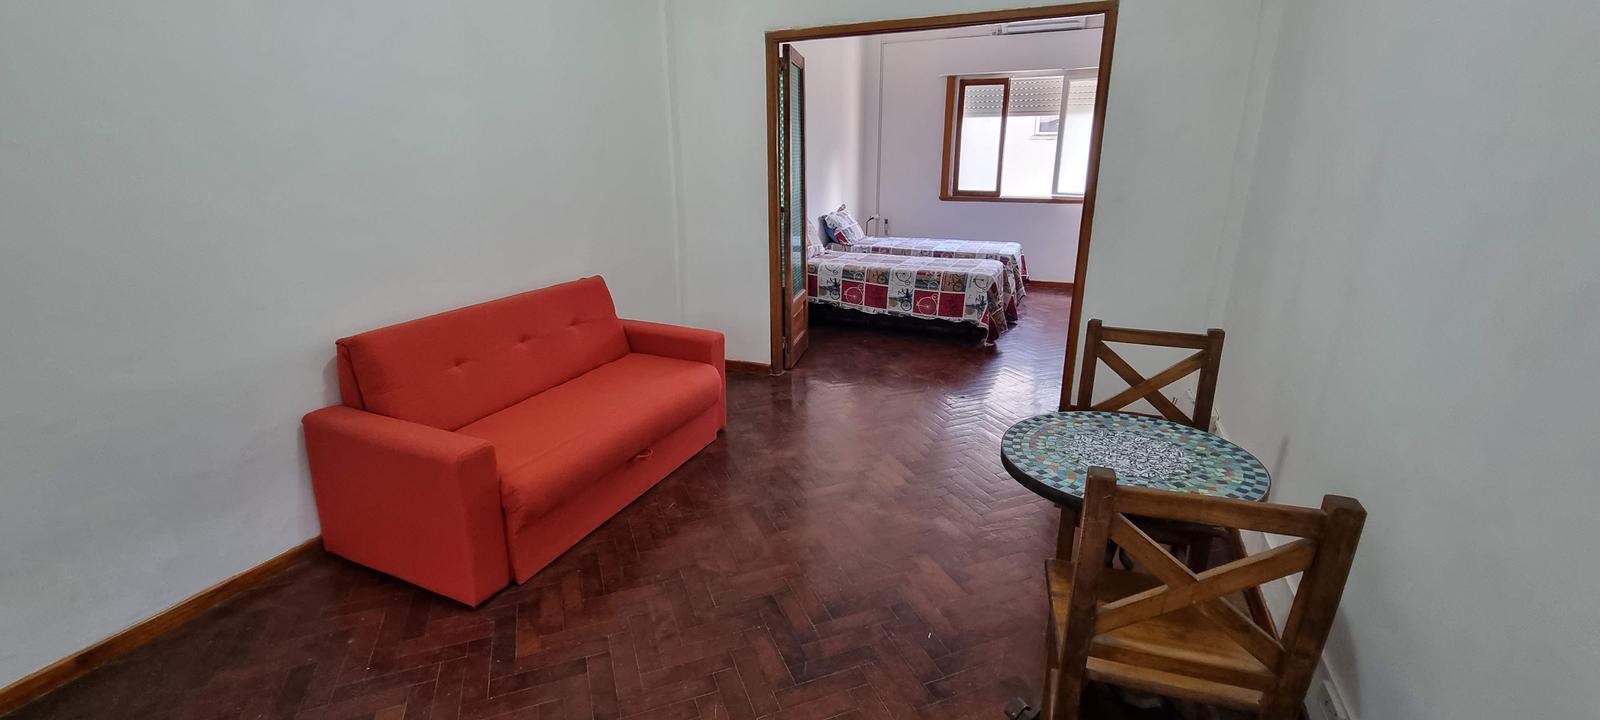 #5075224 | Rental | Apartment | San Telmo (Veglienzone Gestion Inmobiliaria)